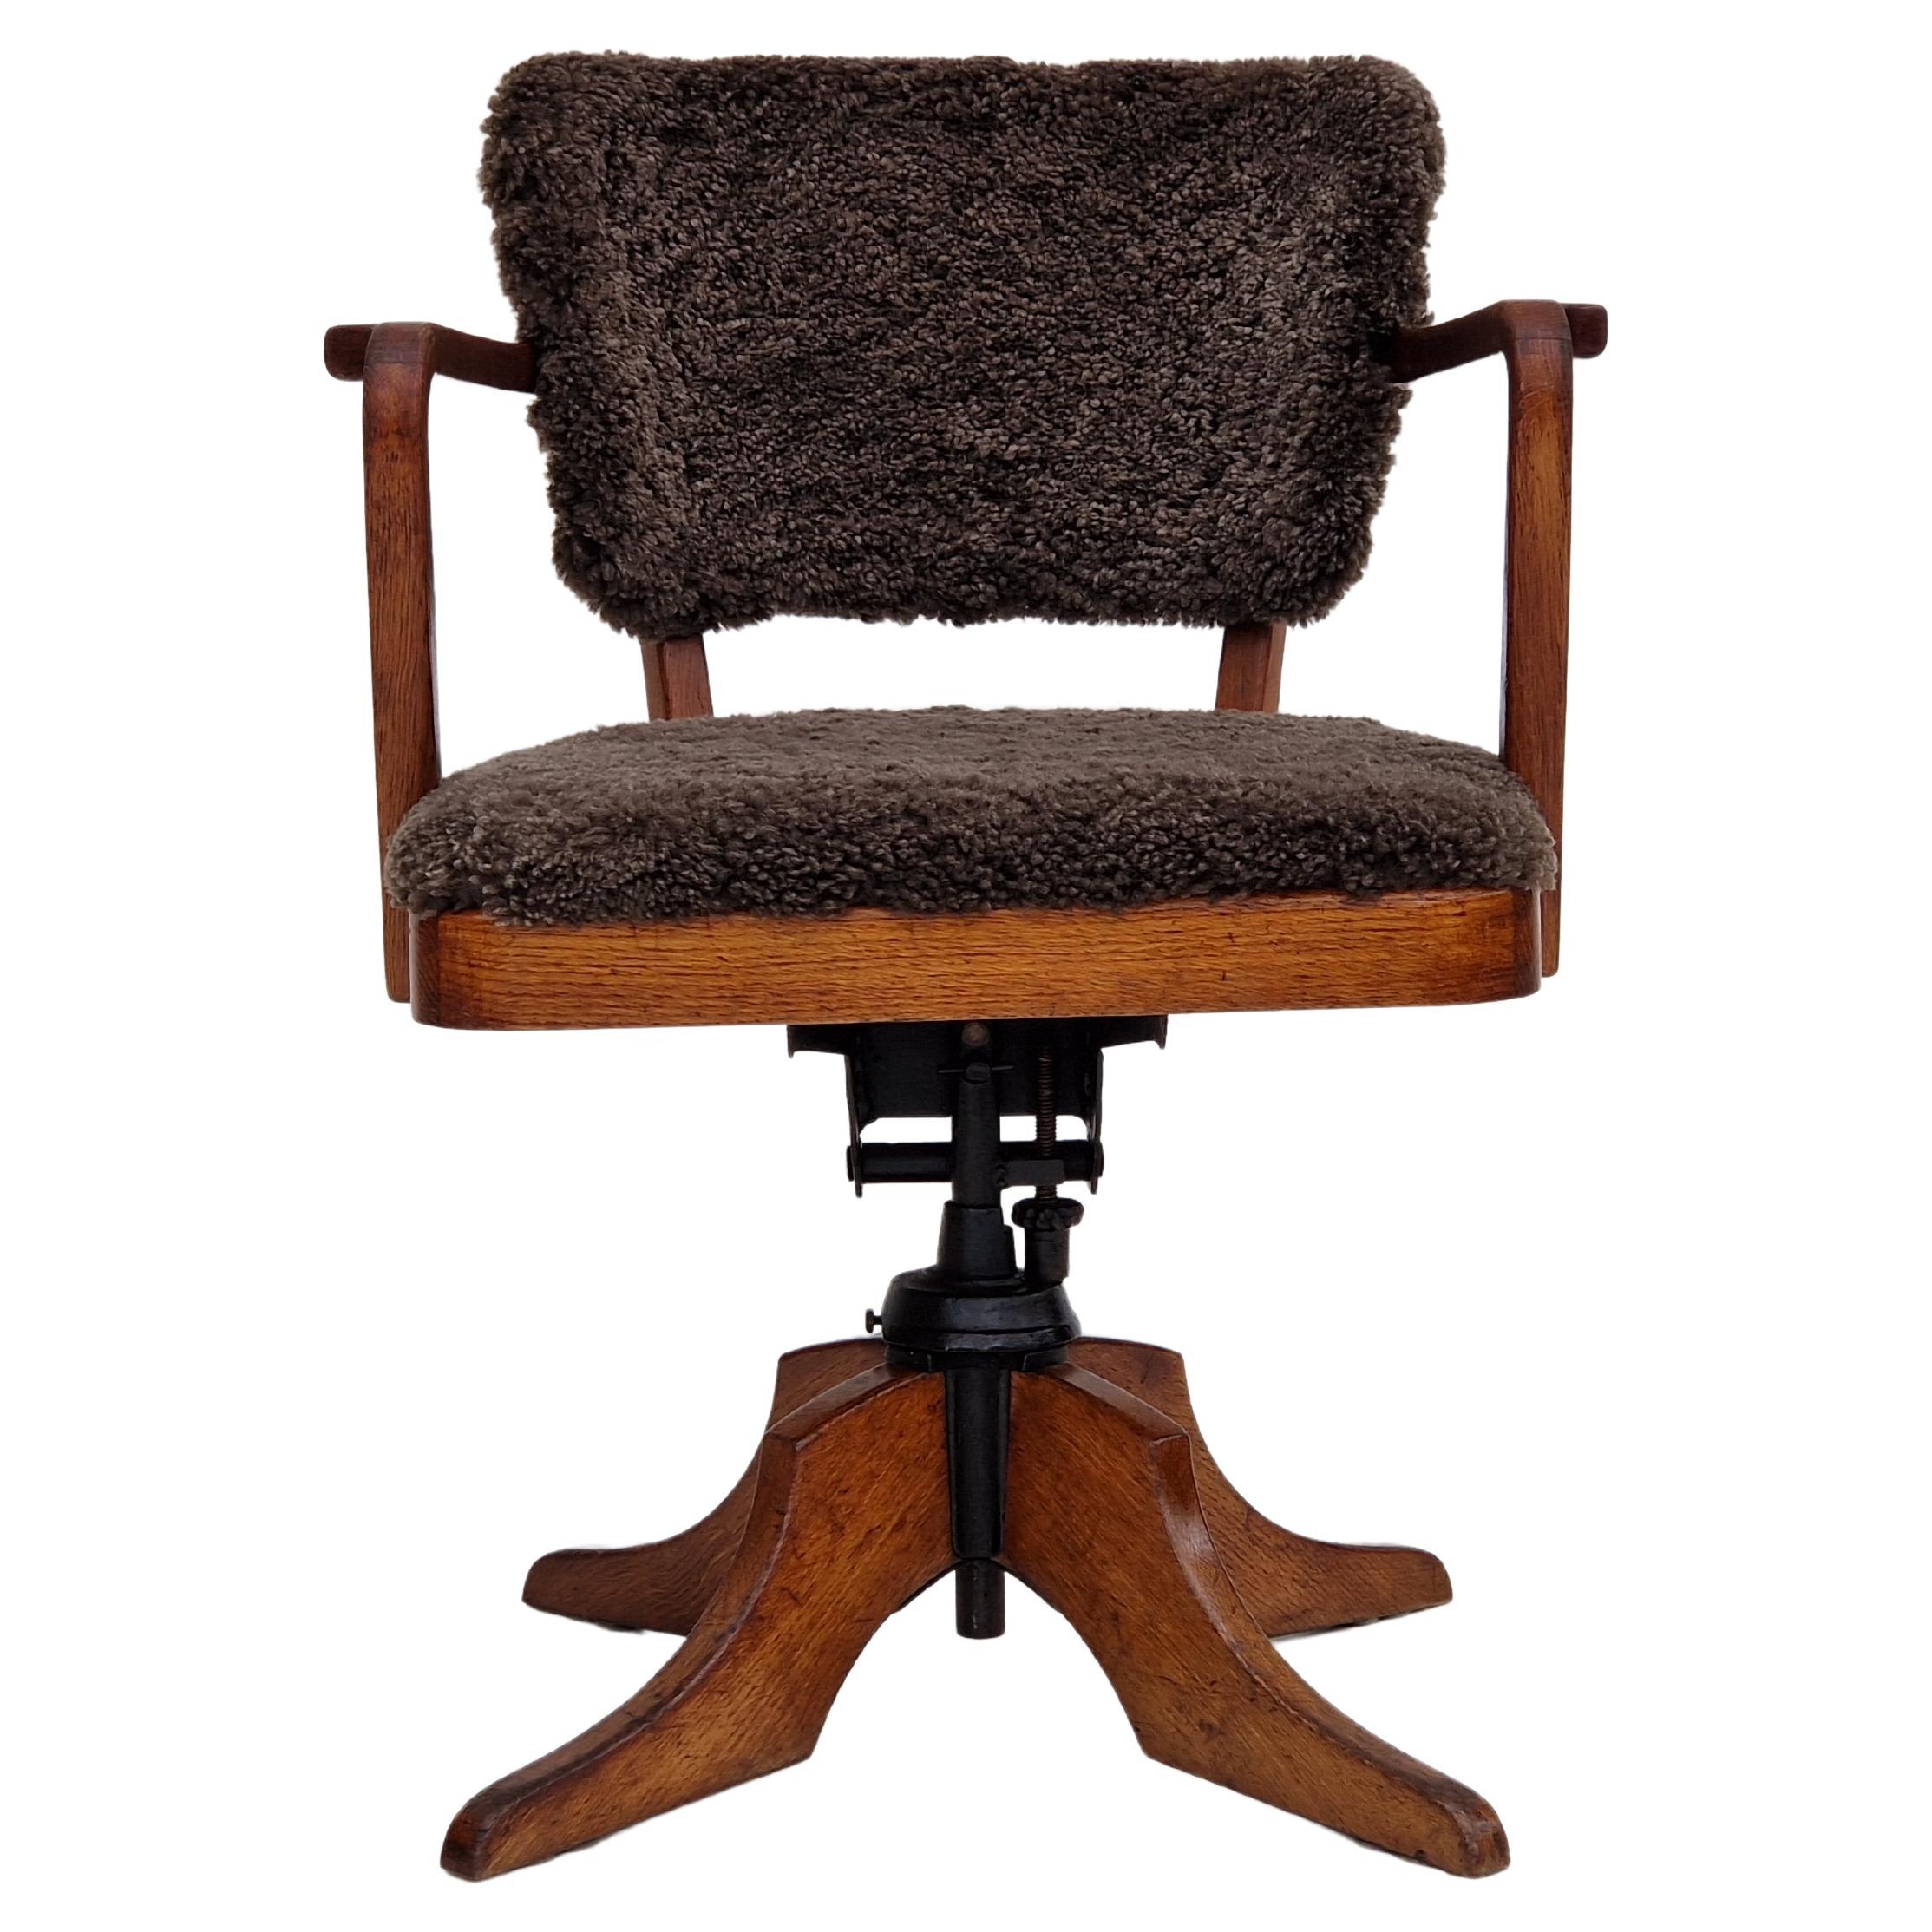 1940s, Danish design, reupholstered swivel chair, tilt function, lambskin.